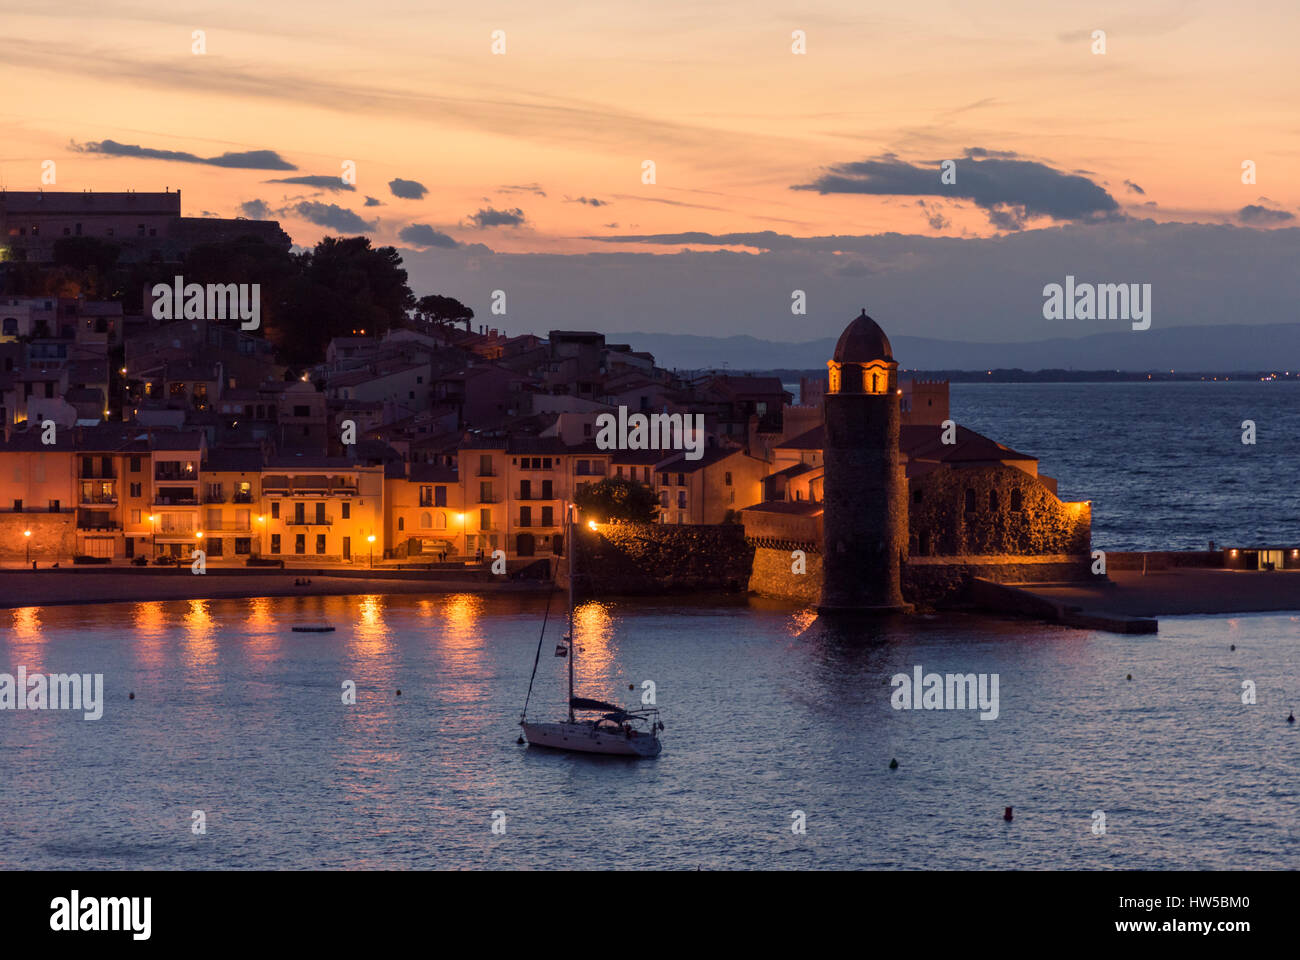 Vue de nuit de la ville waterfront et clocher de l'église Notre Dame des Anges, Collioure, Côte Vermeille, France Banque D'Images